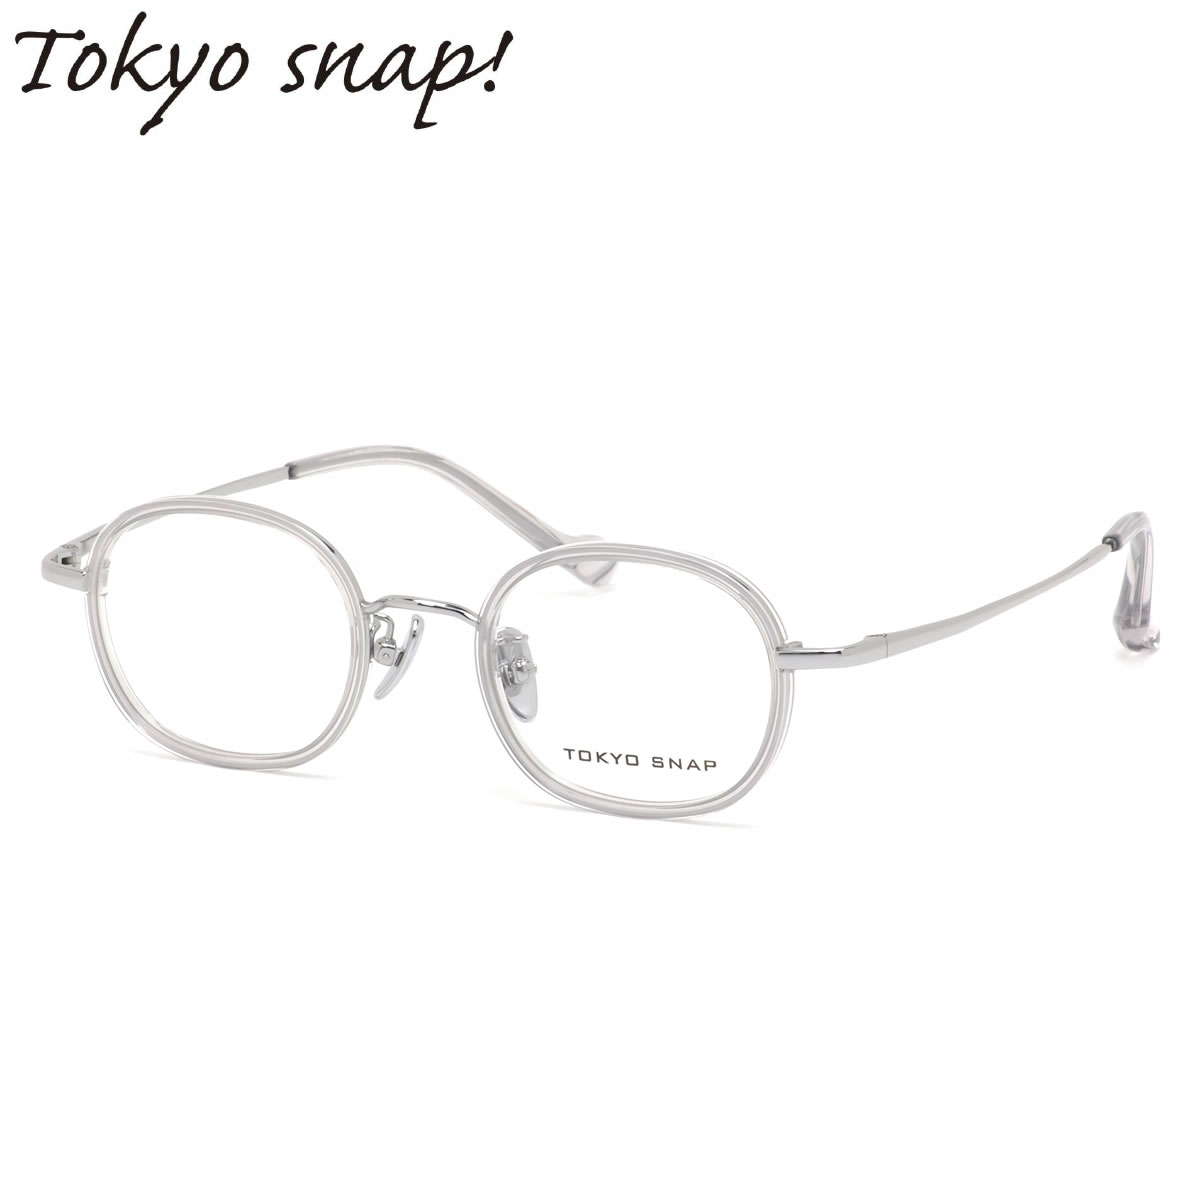 楽天メガネ・サングラスのThat’sトウキョウスナップ TSP-1044 07 43 メガネ TOKYO SNAP トウキョウスナッププラス セル巻き インナーリム チタニウム MADE IN JAPAN 国産 日本製 メンズ レディース